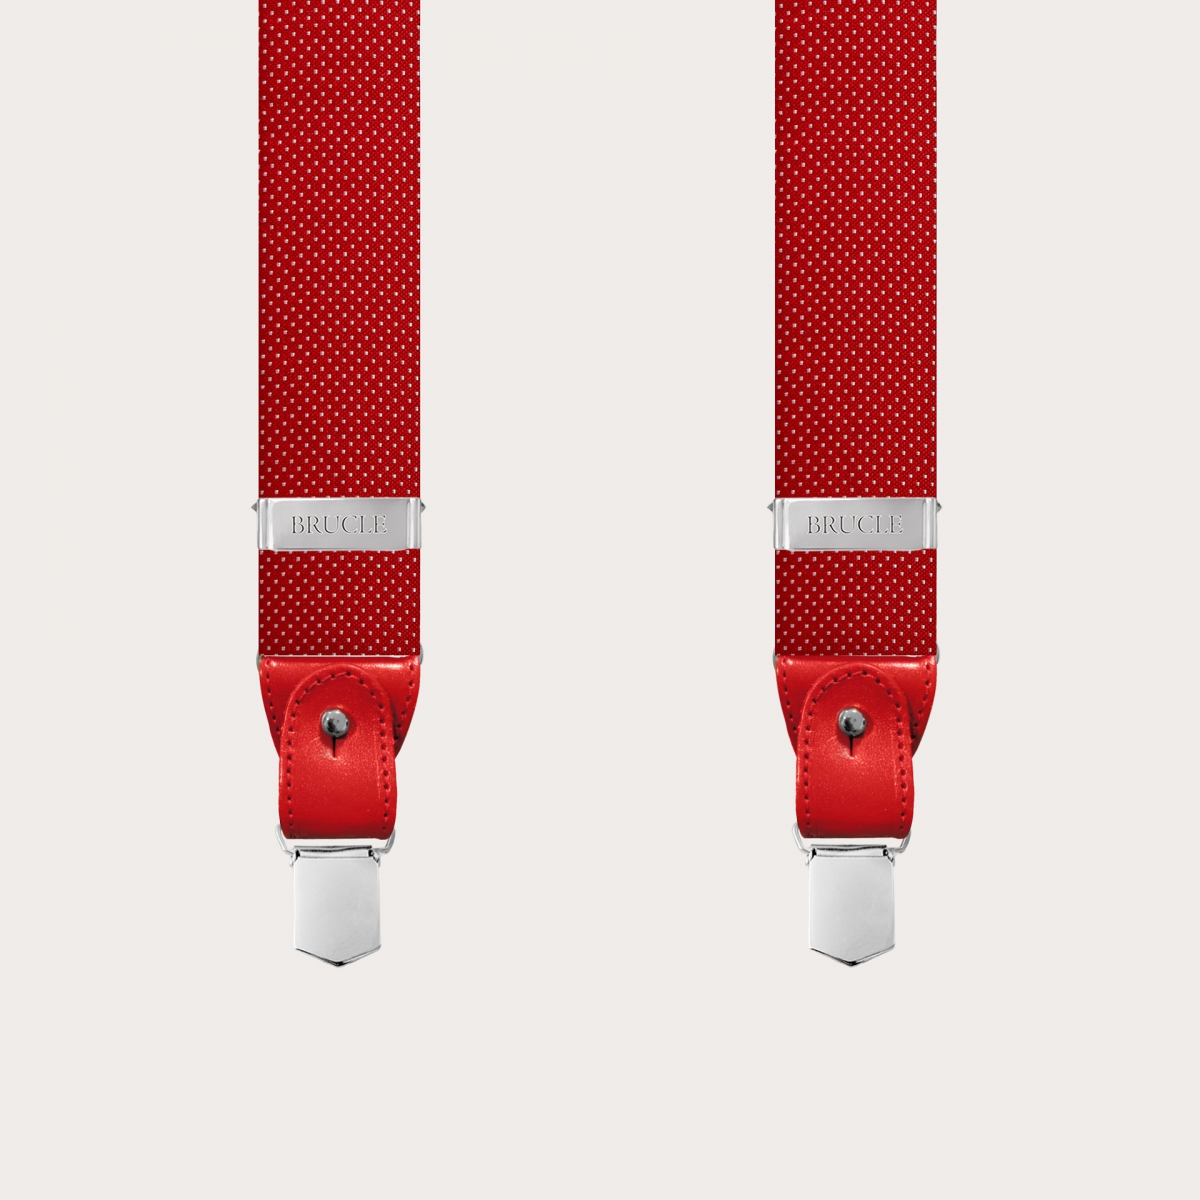 BRUCLE Tirantes en forma de Y en seda jacquard, rojo punteado